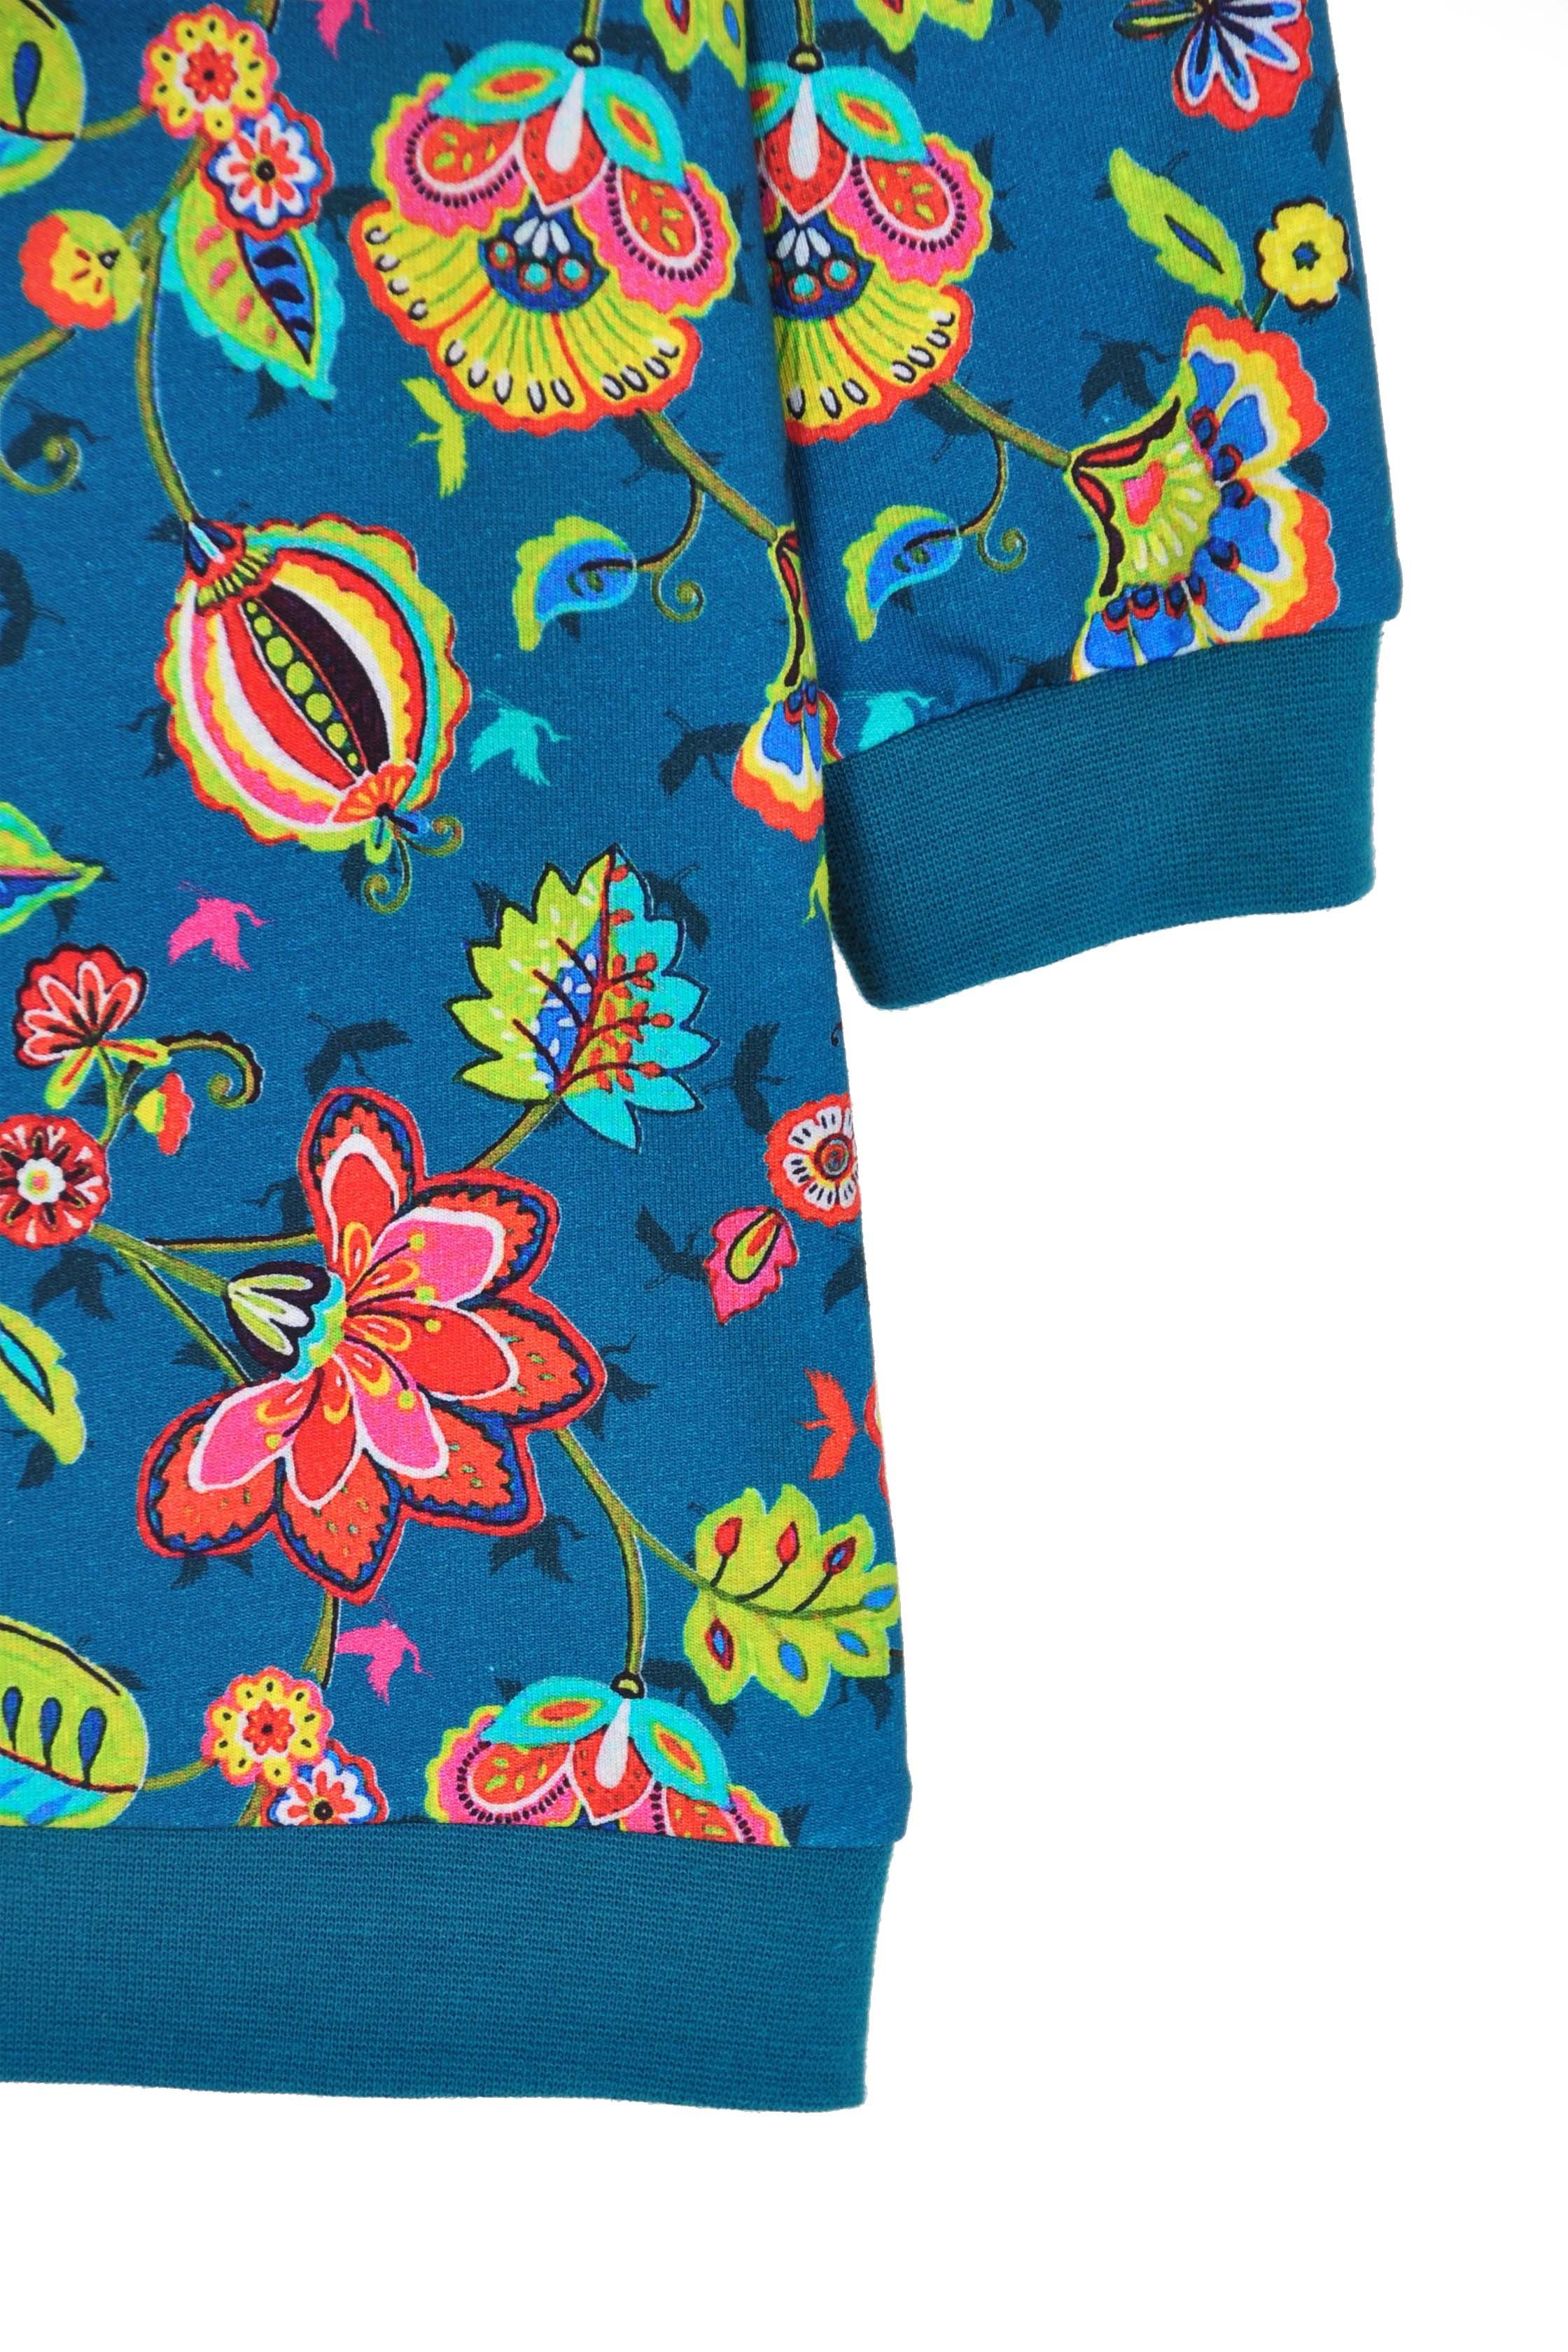 coolismo Sweatkleid Sweatshirt Kleid für europäische Blumen coole Mädchen Produktion petrol mit Motivdruck